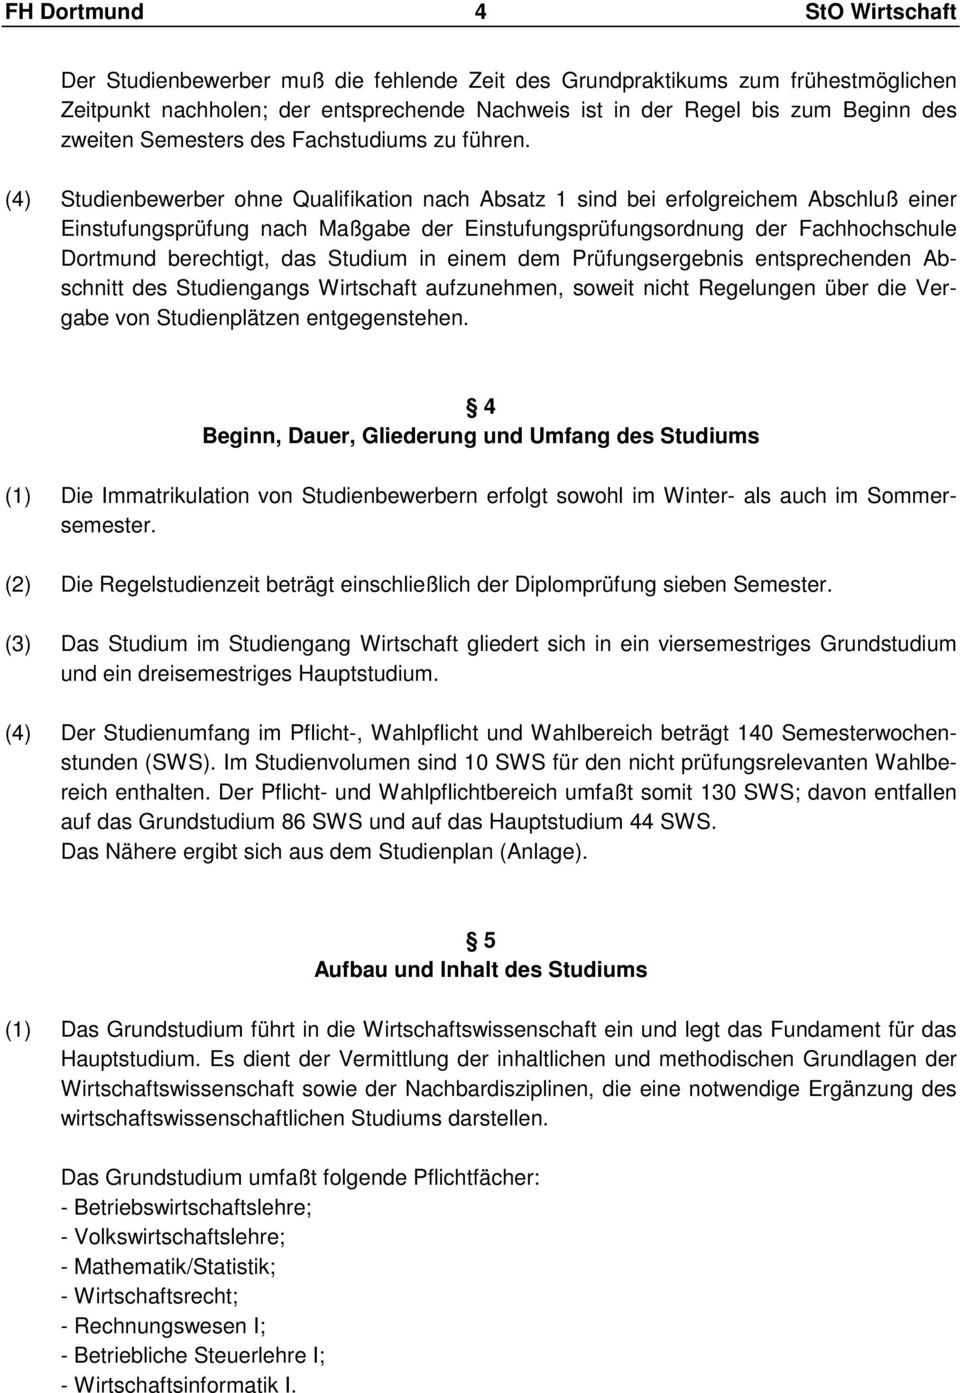 (4) Studienbewerber ohne Qualifikation nach Absatz 1 sind bei erfolgreichem Abschluß einer Einstufungsprüfung nach Maßgabe der Einstufungsprüfungsordnung der Fachhochschule Dortmund berechtigt, das